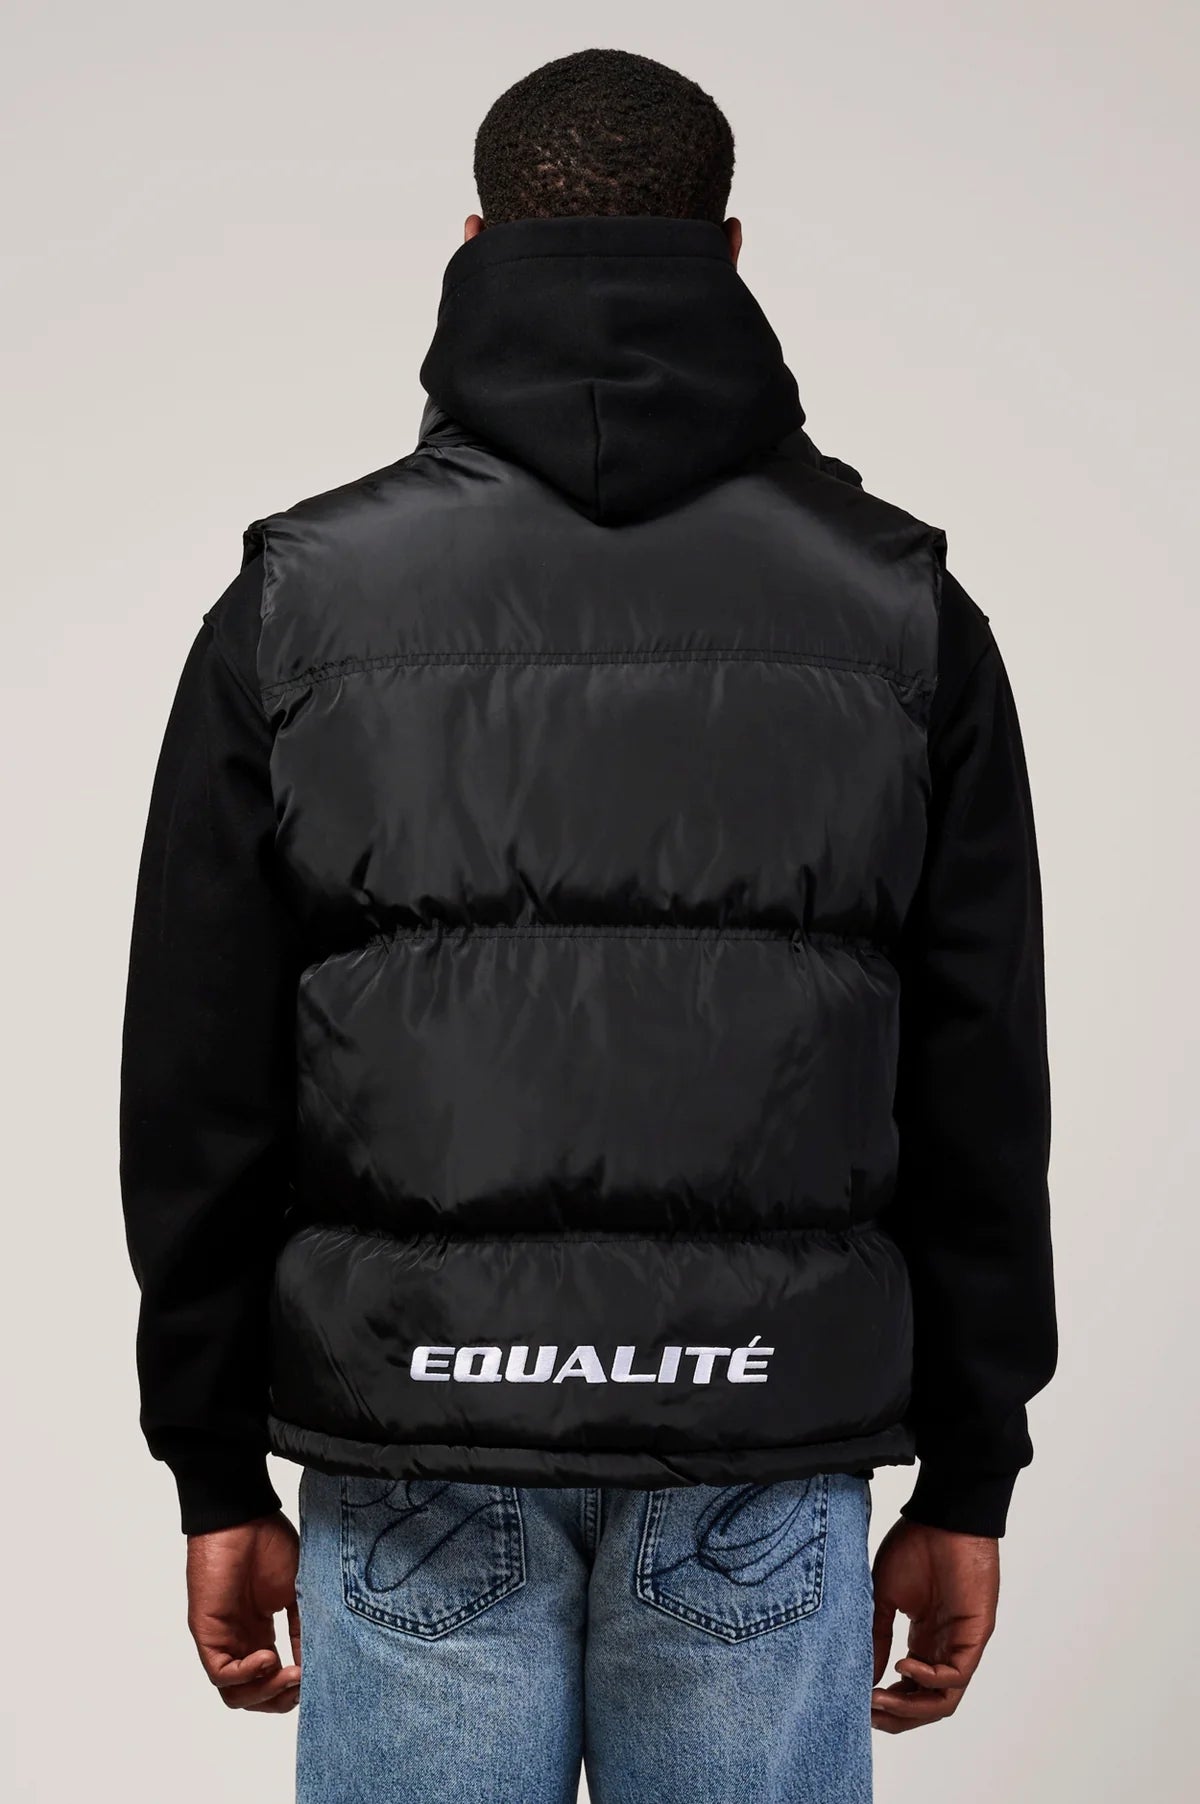 Equalite essential bodywarmer - black